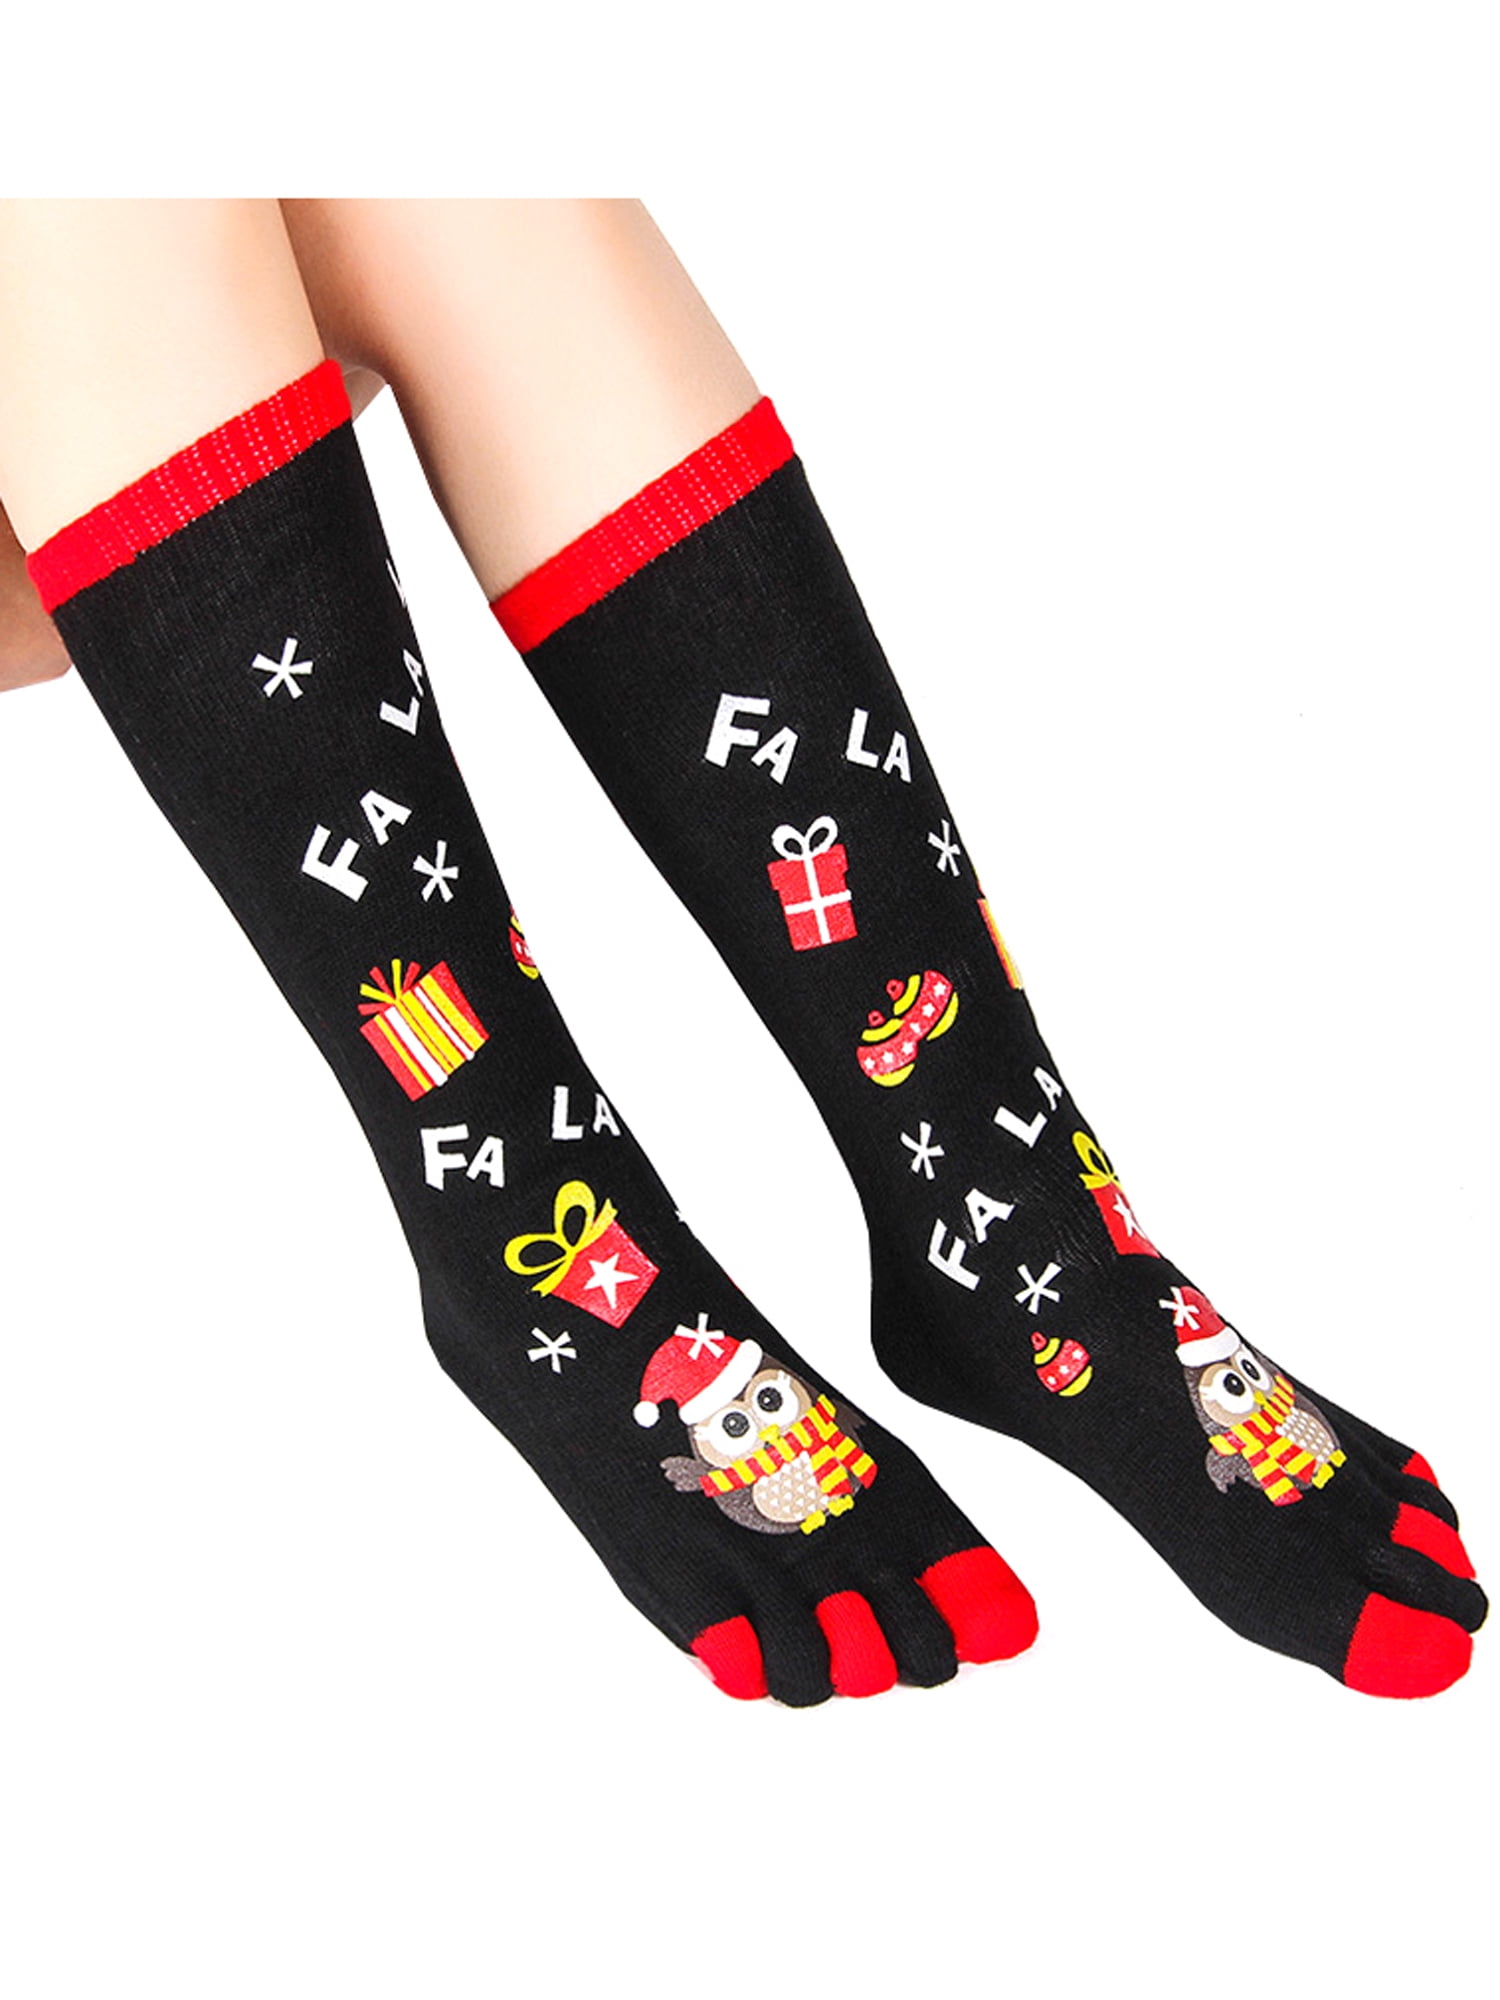 Lallc - Christmas Novelty Socks Five Finger Toe Socks Funny Mid ...